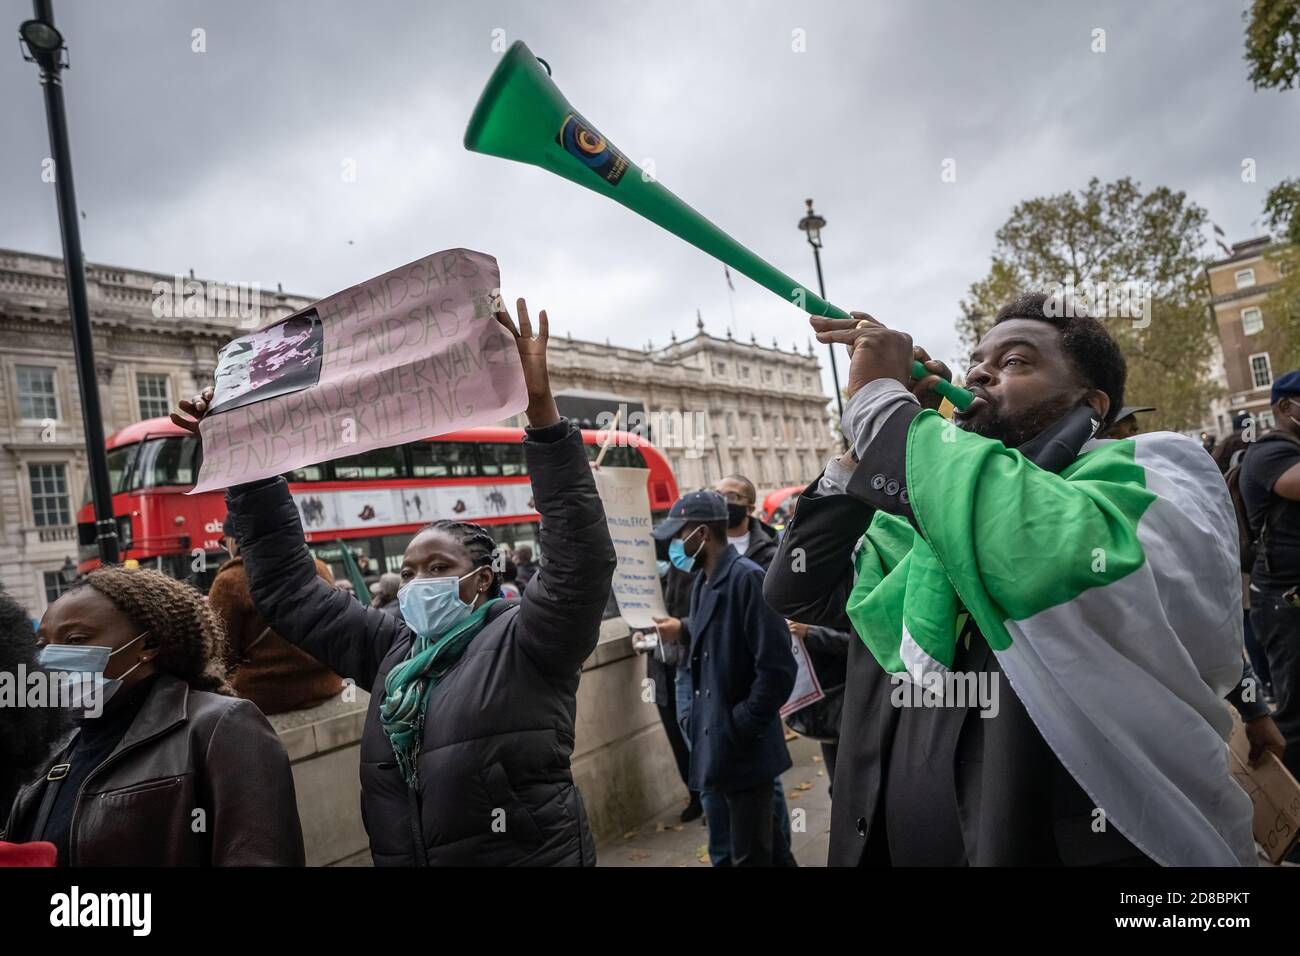 Los británicos y nigerianos se manifiestan frente a Downing Street contra la brutalidad policial llevada a cabo por una unidad de la policía nigeriana llamada SARS. Londres. Foto de stock